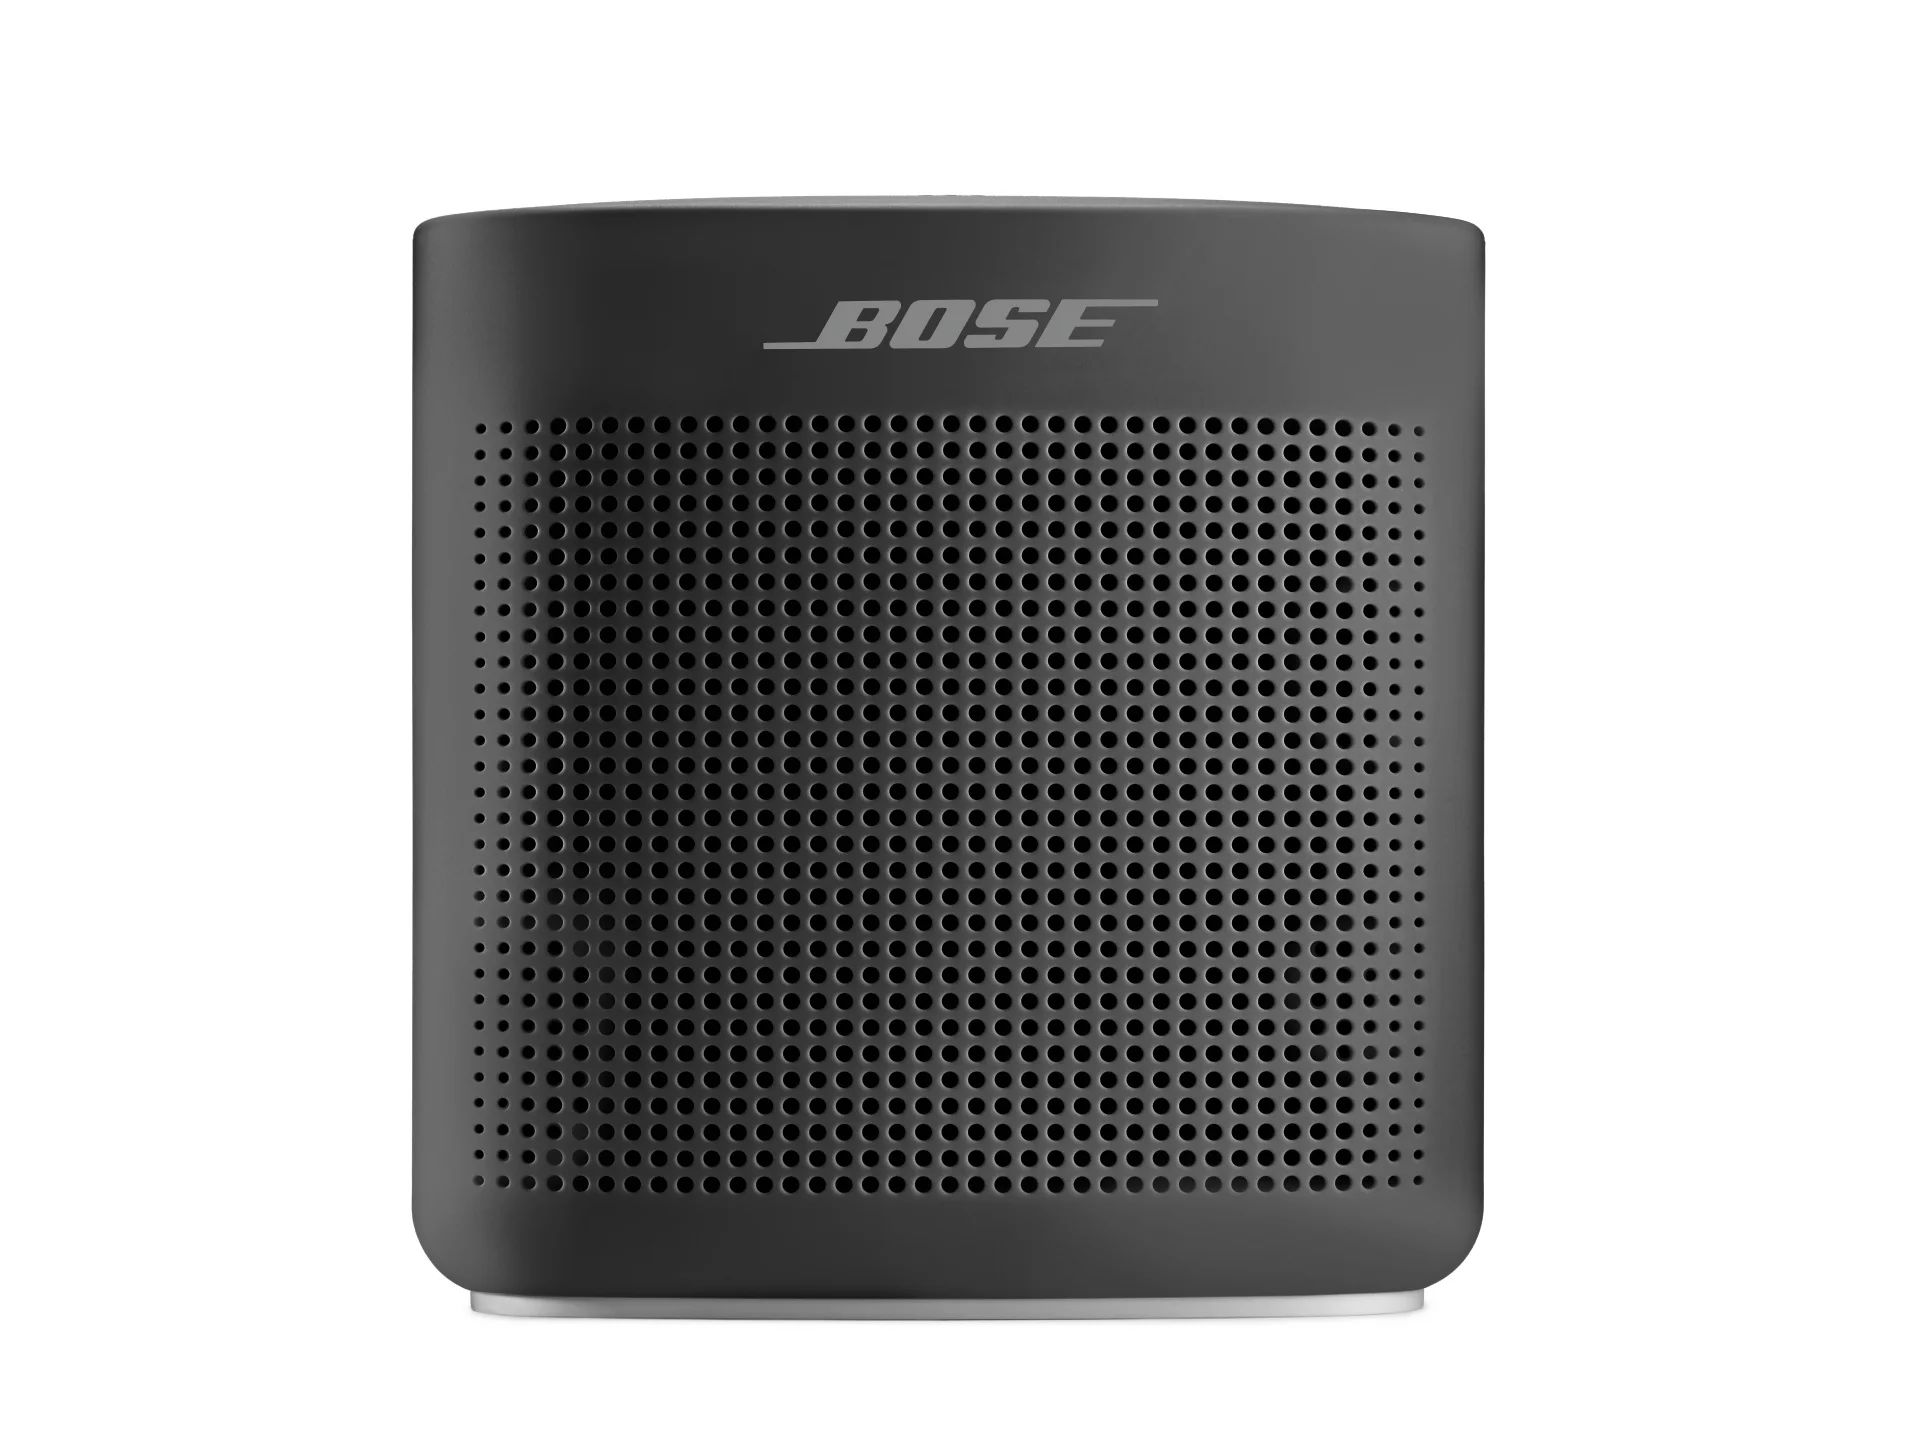 Bose SoundLink Color Portable Bluetooth Speaker II - Black | Walmart (US)